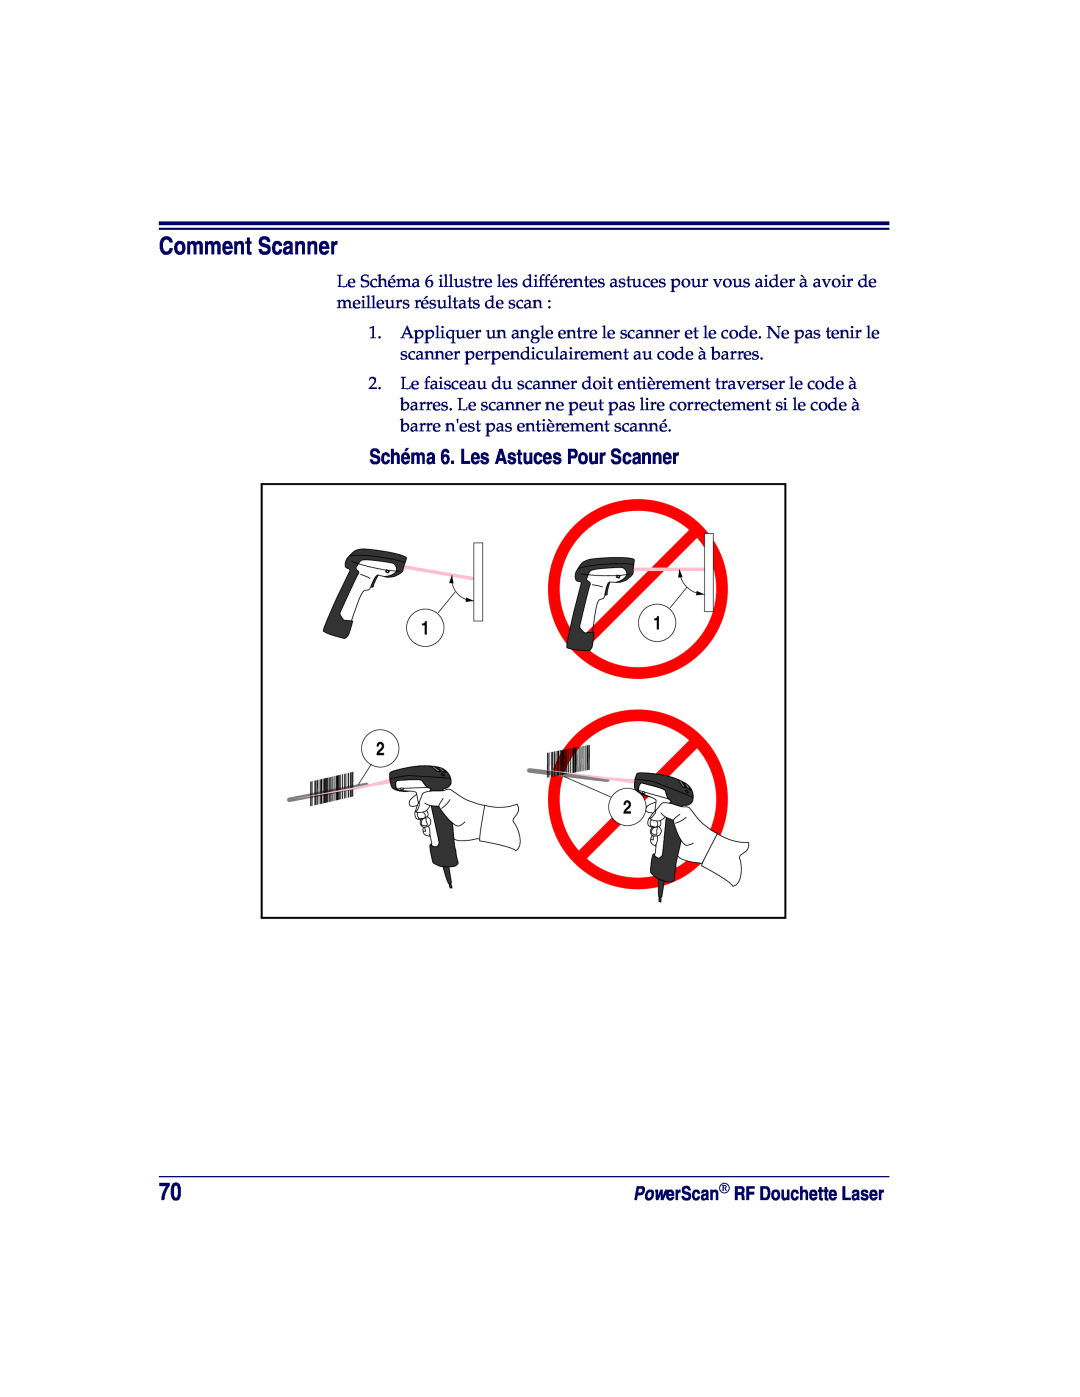 Datalogic Scanning SR, XLR, HD manual Comment Scanner, Schéma 6. Les Astuces Pour Scanner 